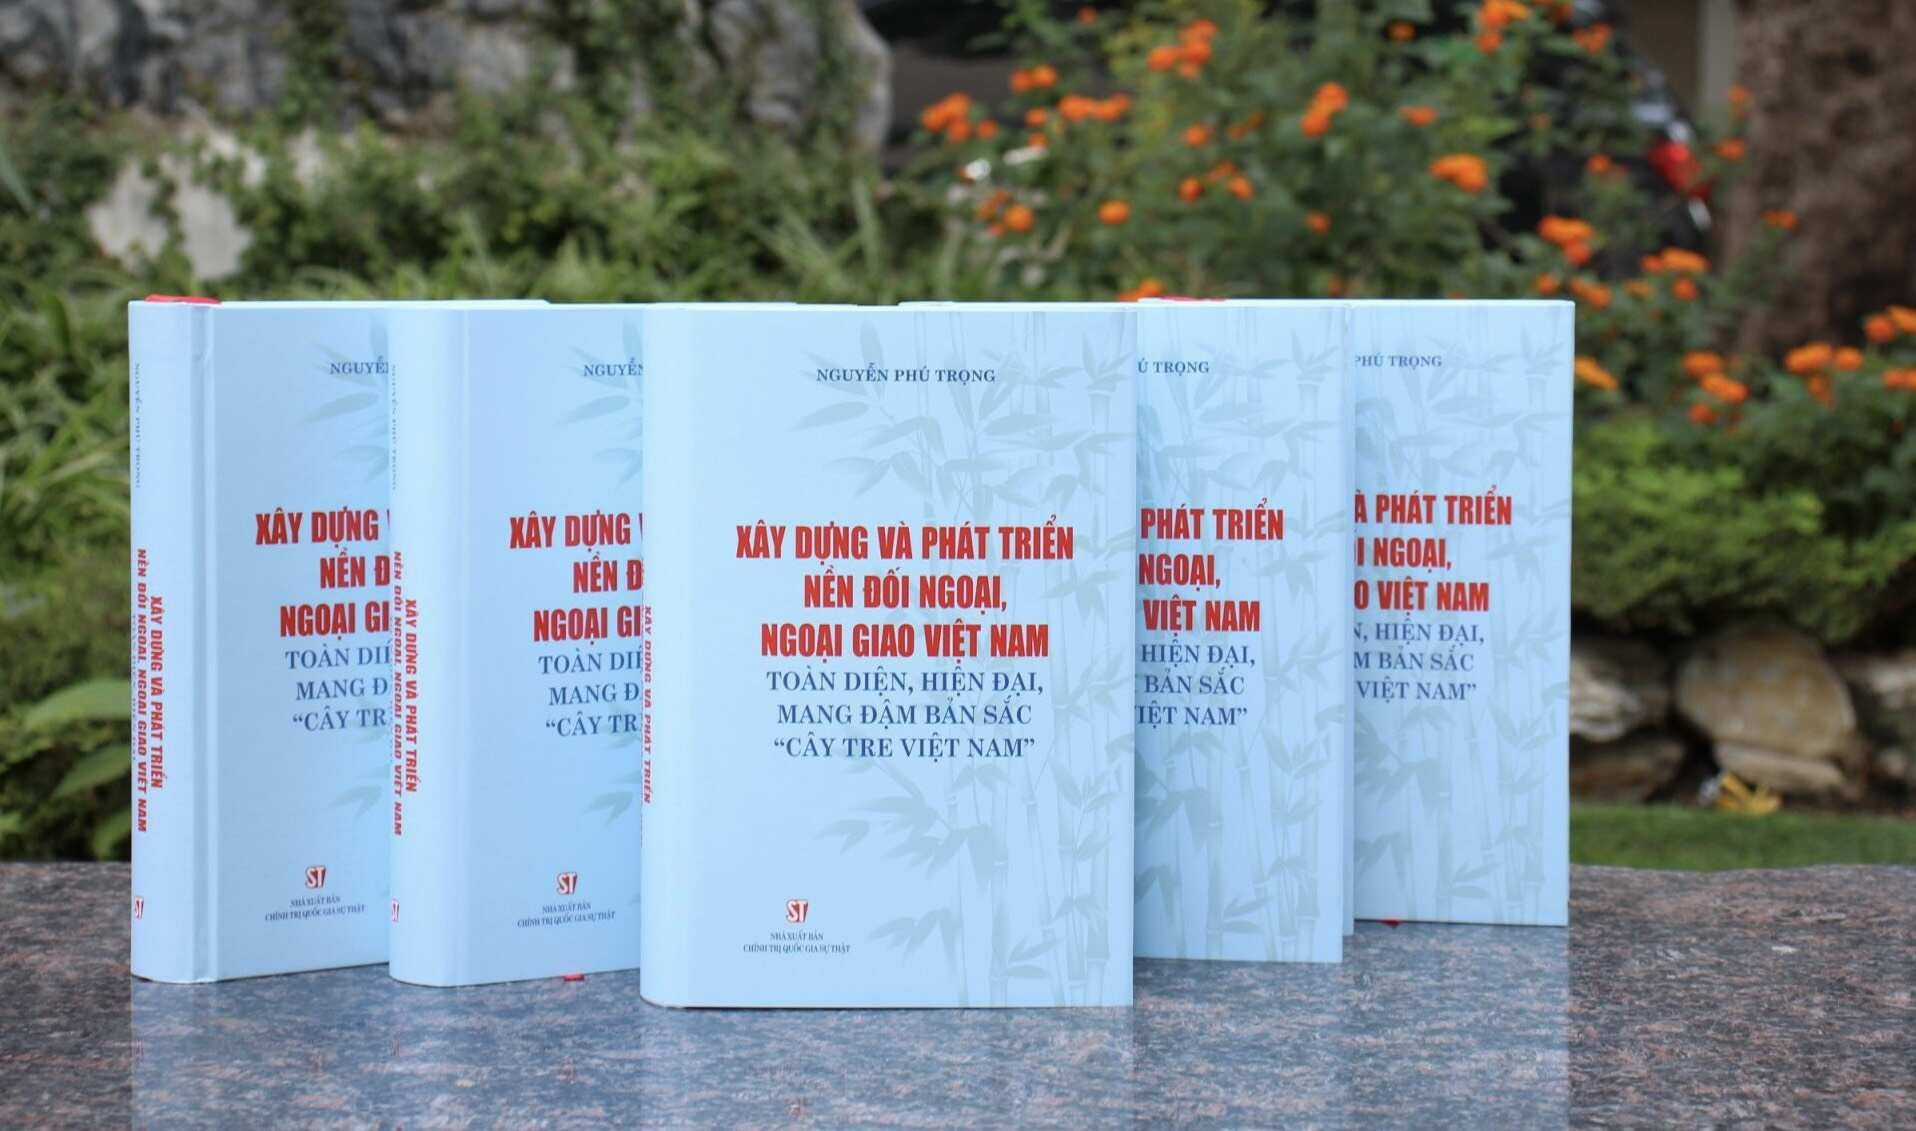 Ra mắt sách của Tổng Bí thư về đối ngoại, ngoại giao Việt Nam- Ảnh 4.